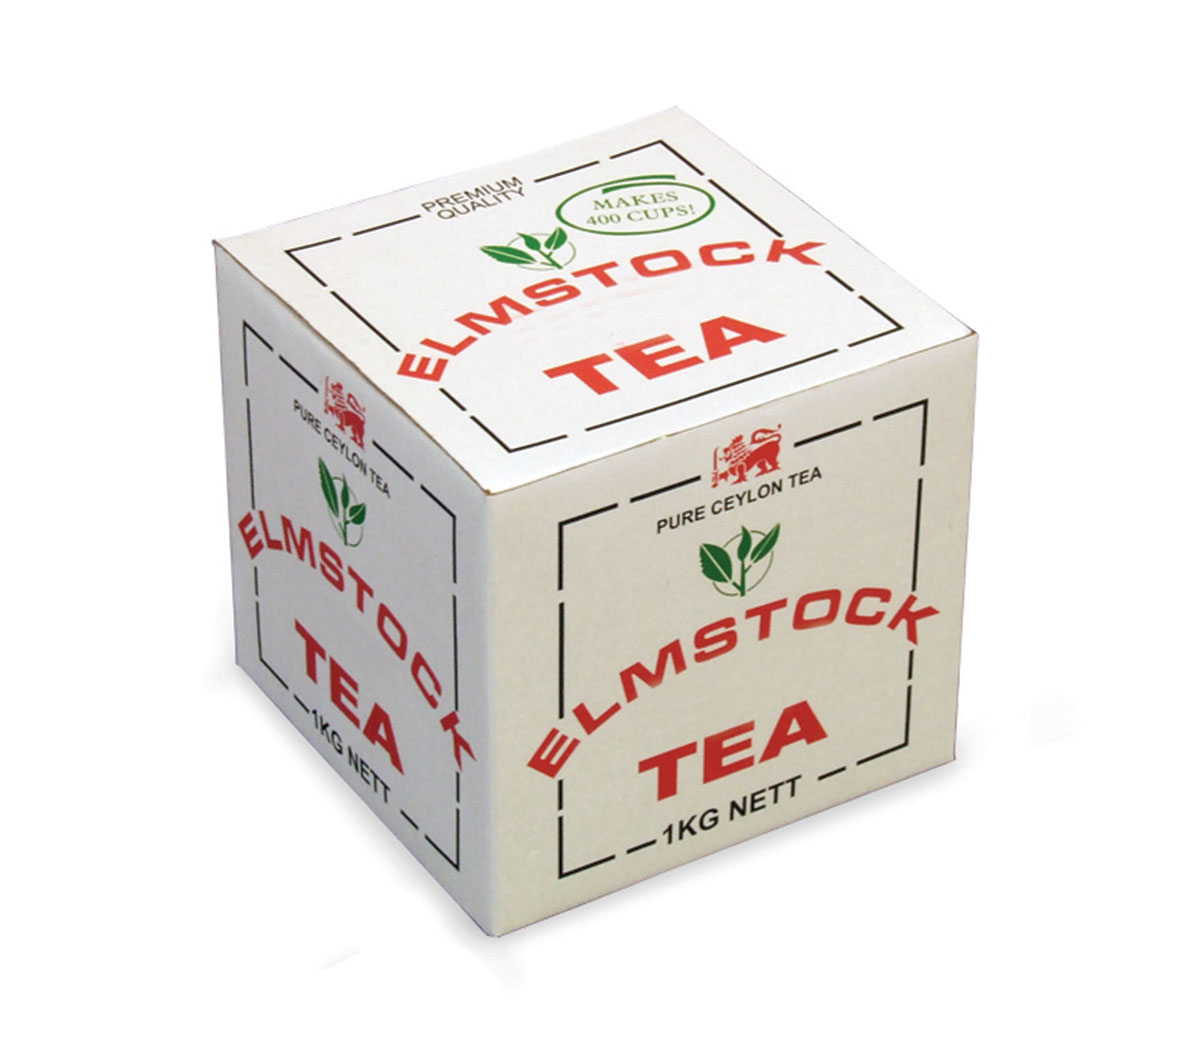 Elmstock Tea Ceylon Pekoe B.O.P. 'Loose Leaf' 1kg